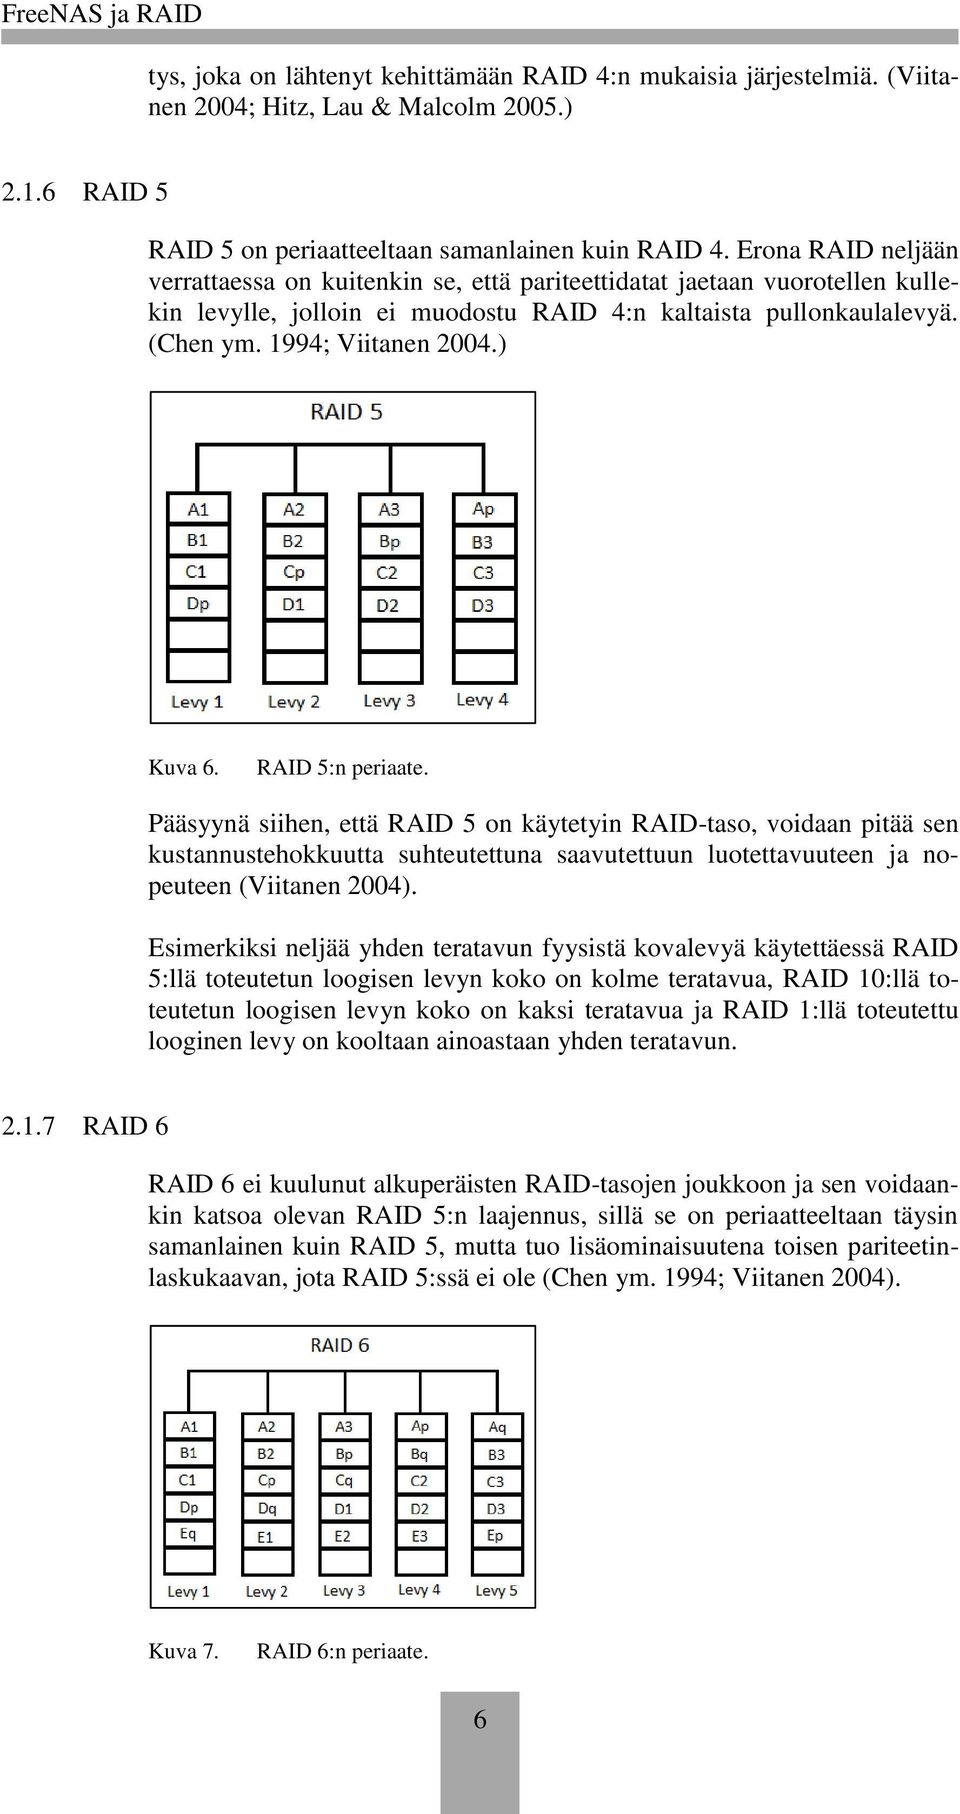 ) Kuva 6. RAID 5:n periaate. Pääsyynä siihen, että RAID 5 on käytetyin RAID-taso, voidaan pitää sen kustannustehokkuutta suhteutettuna saavutettuun luotettavuuteen ja nopeuteen (Viitanen 2004).